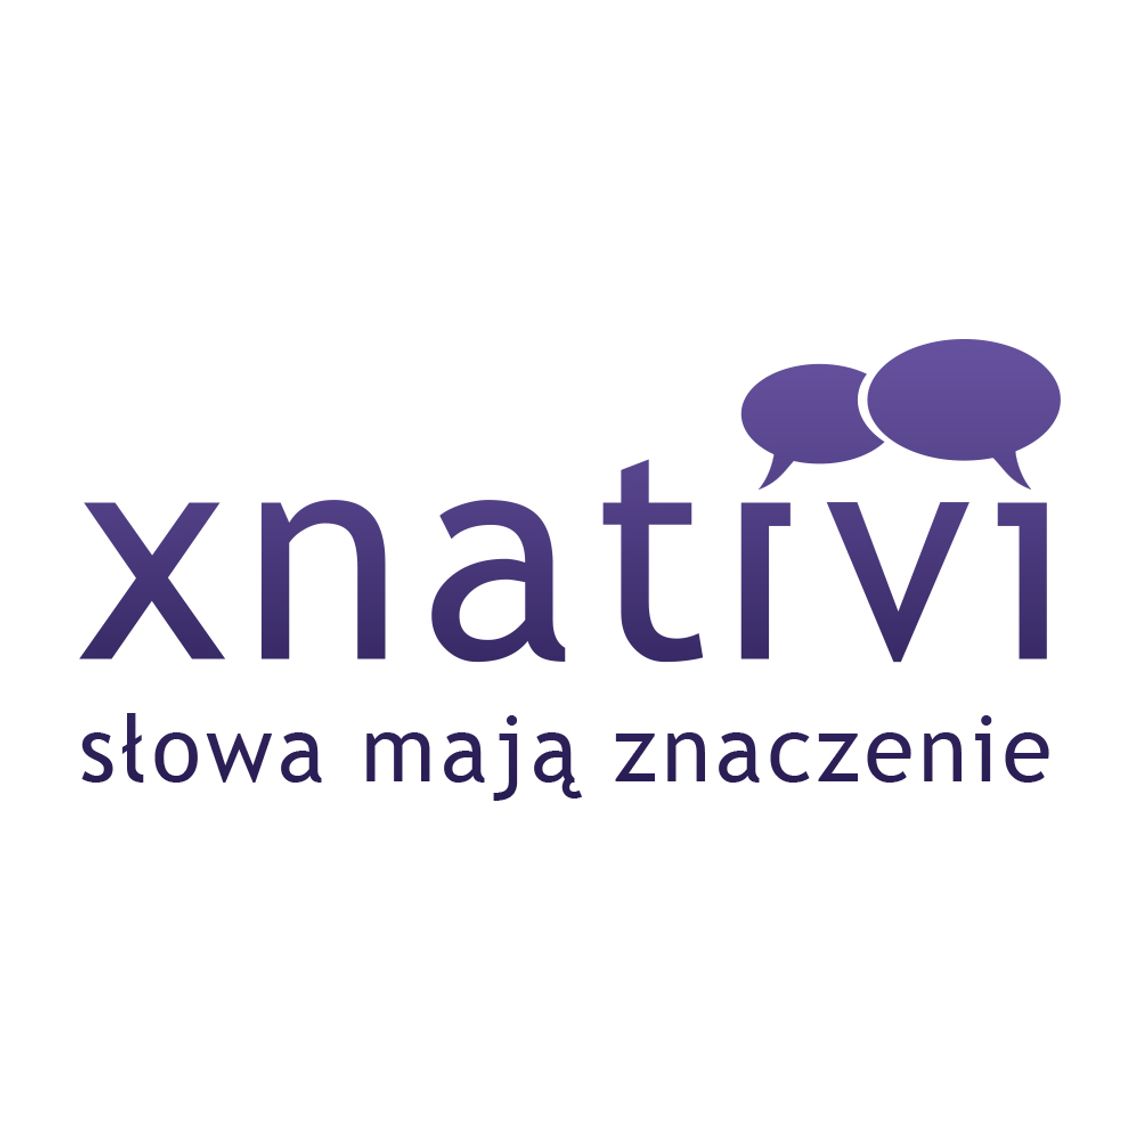 Biuro tłumaczeń xnativi - tłumaczenia przez Internet